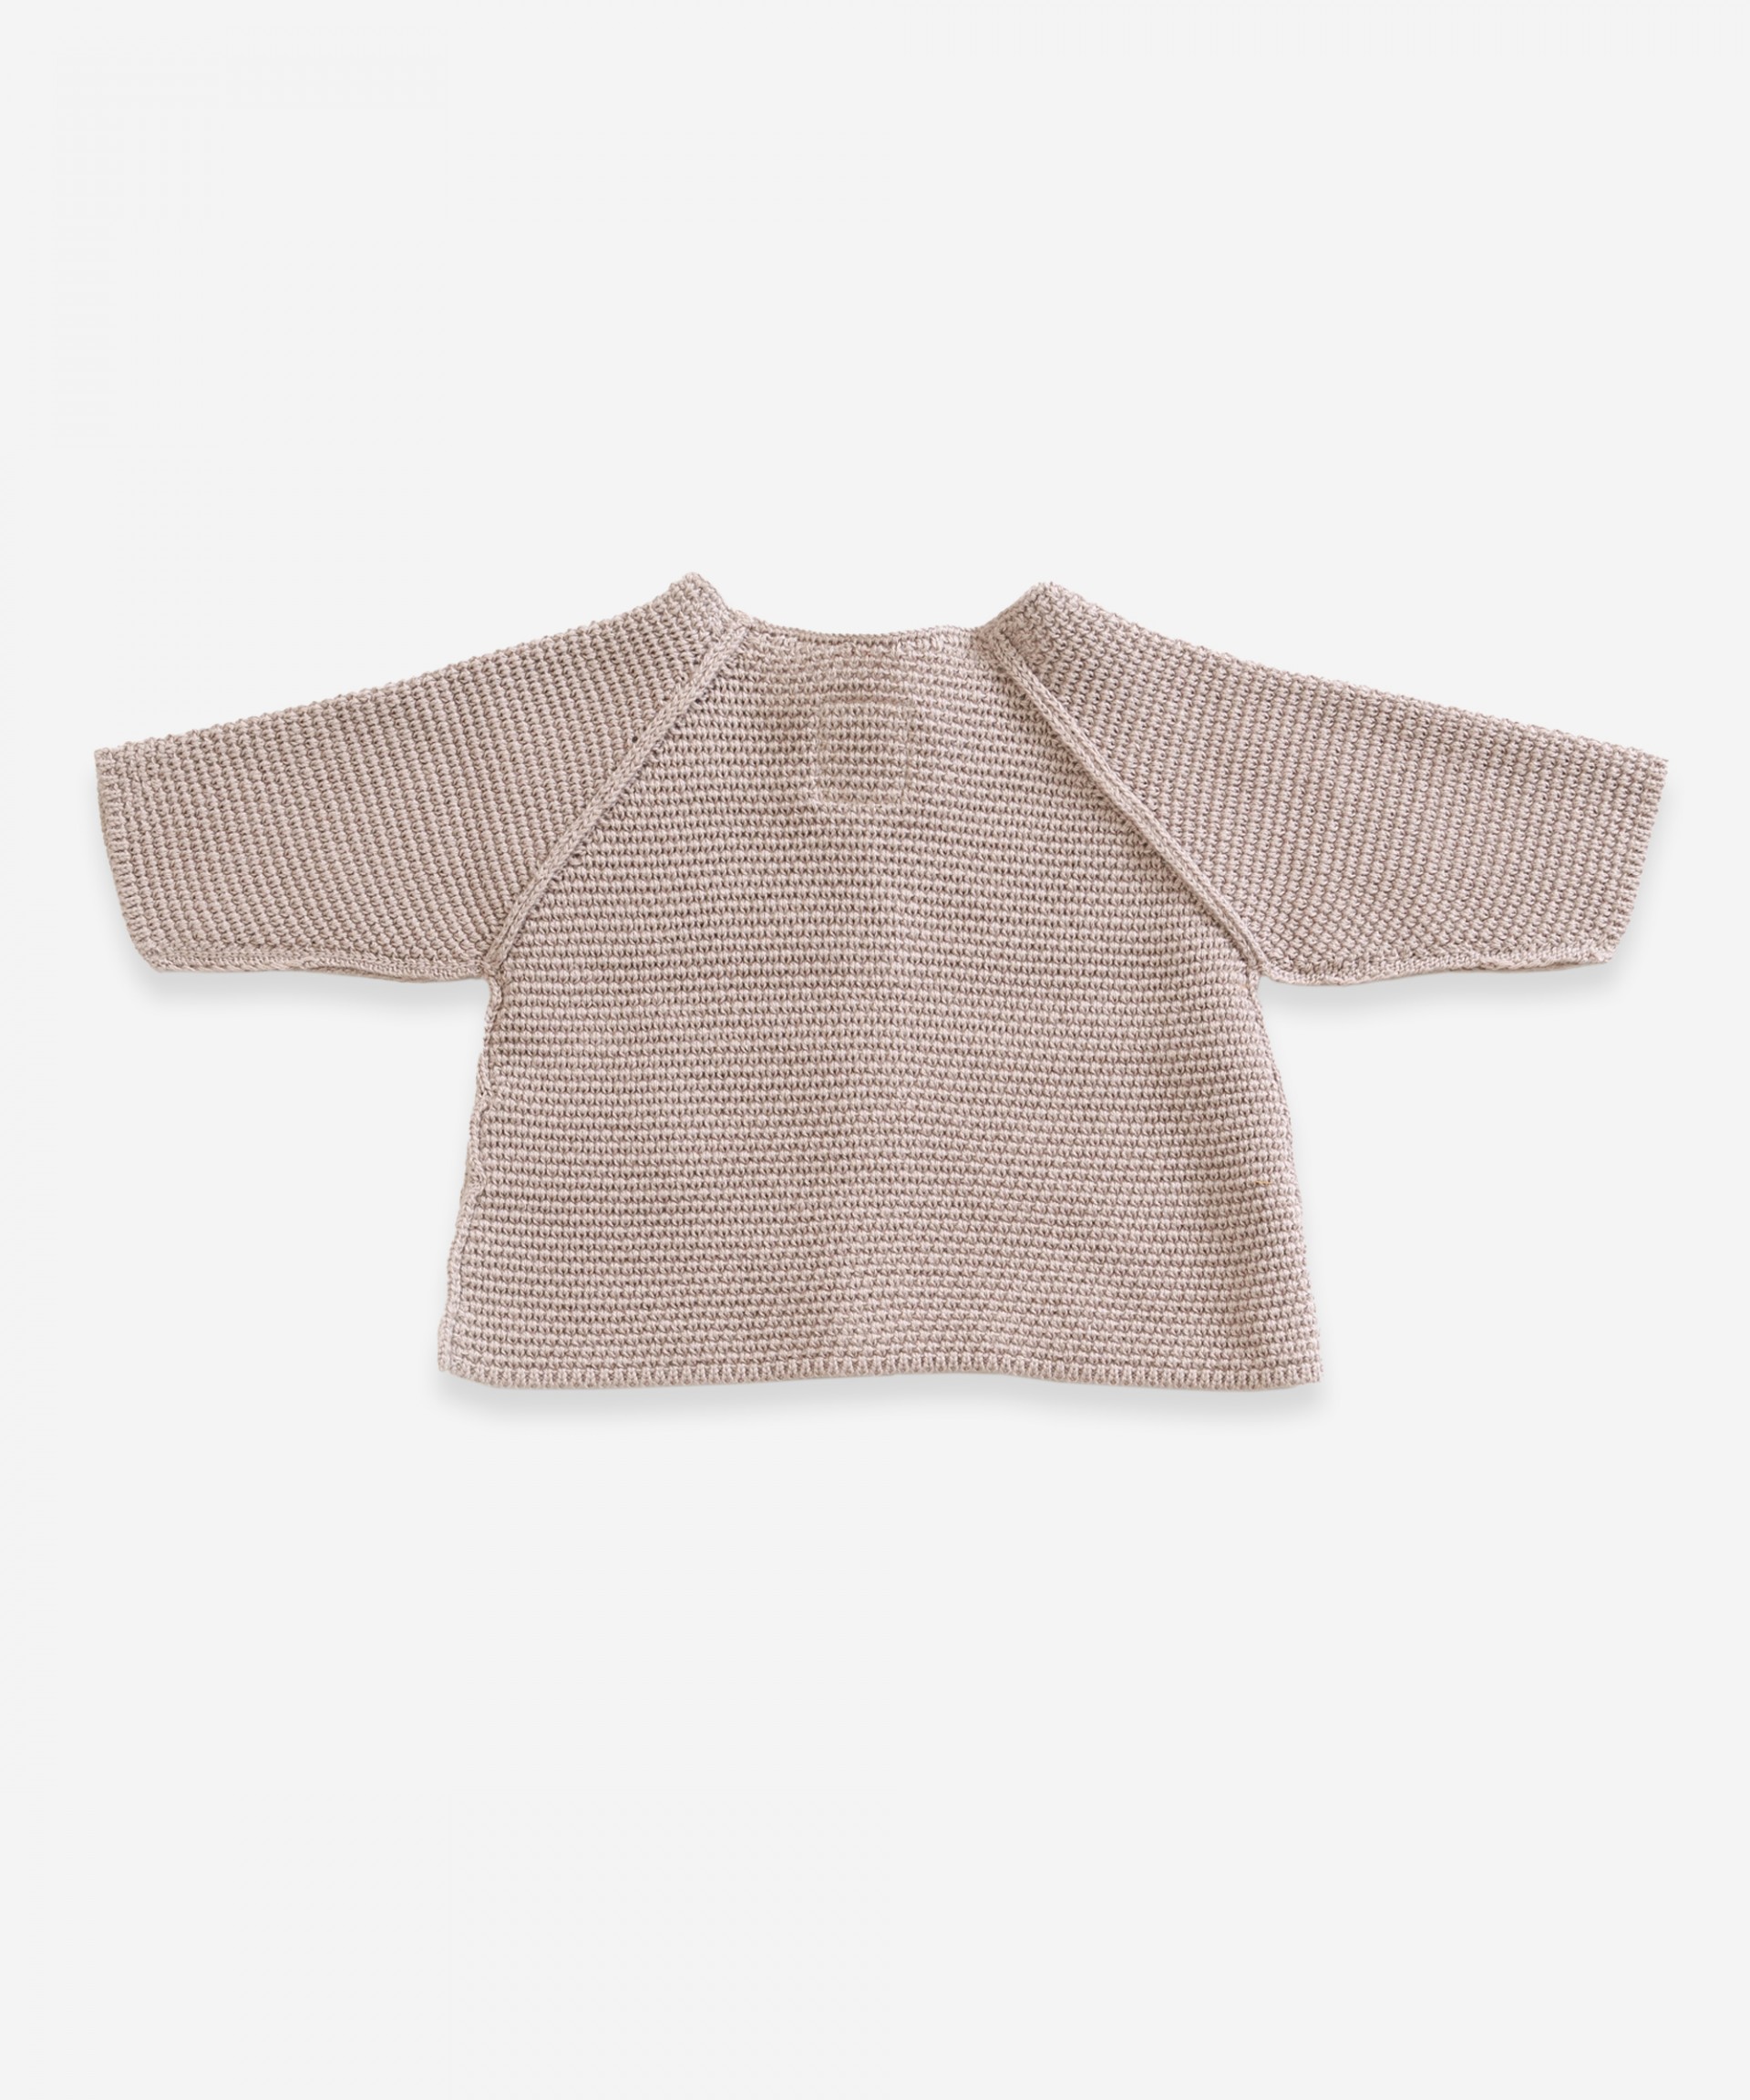 Casaco tricot com botões de resina | Weaving